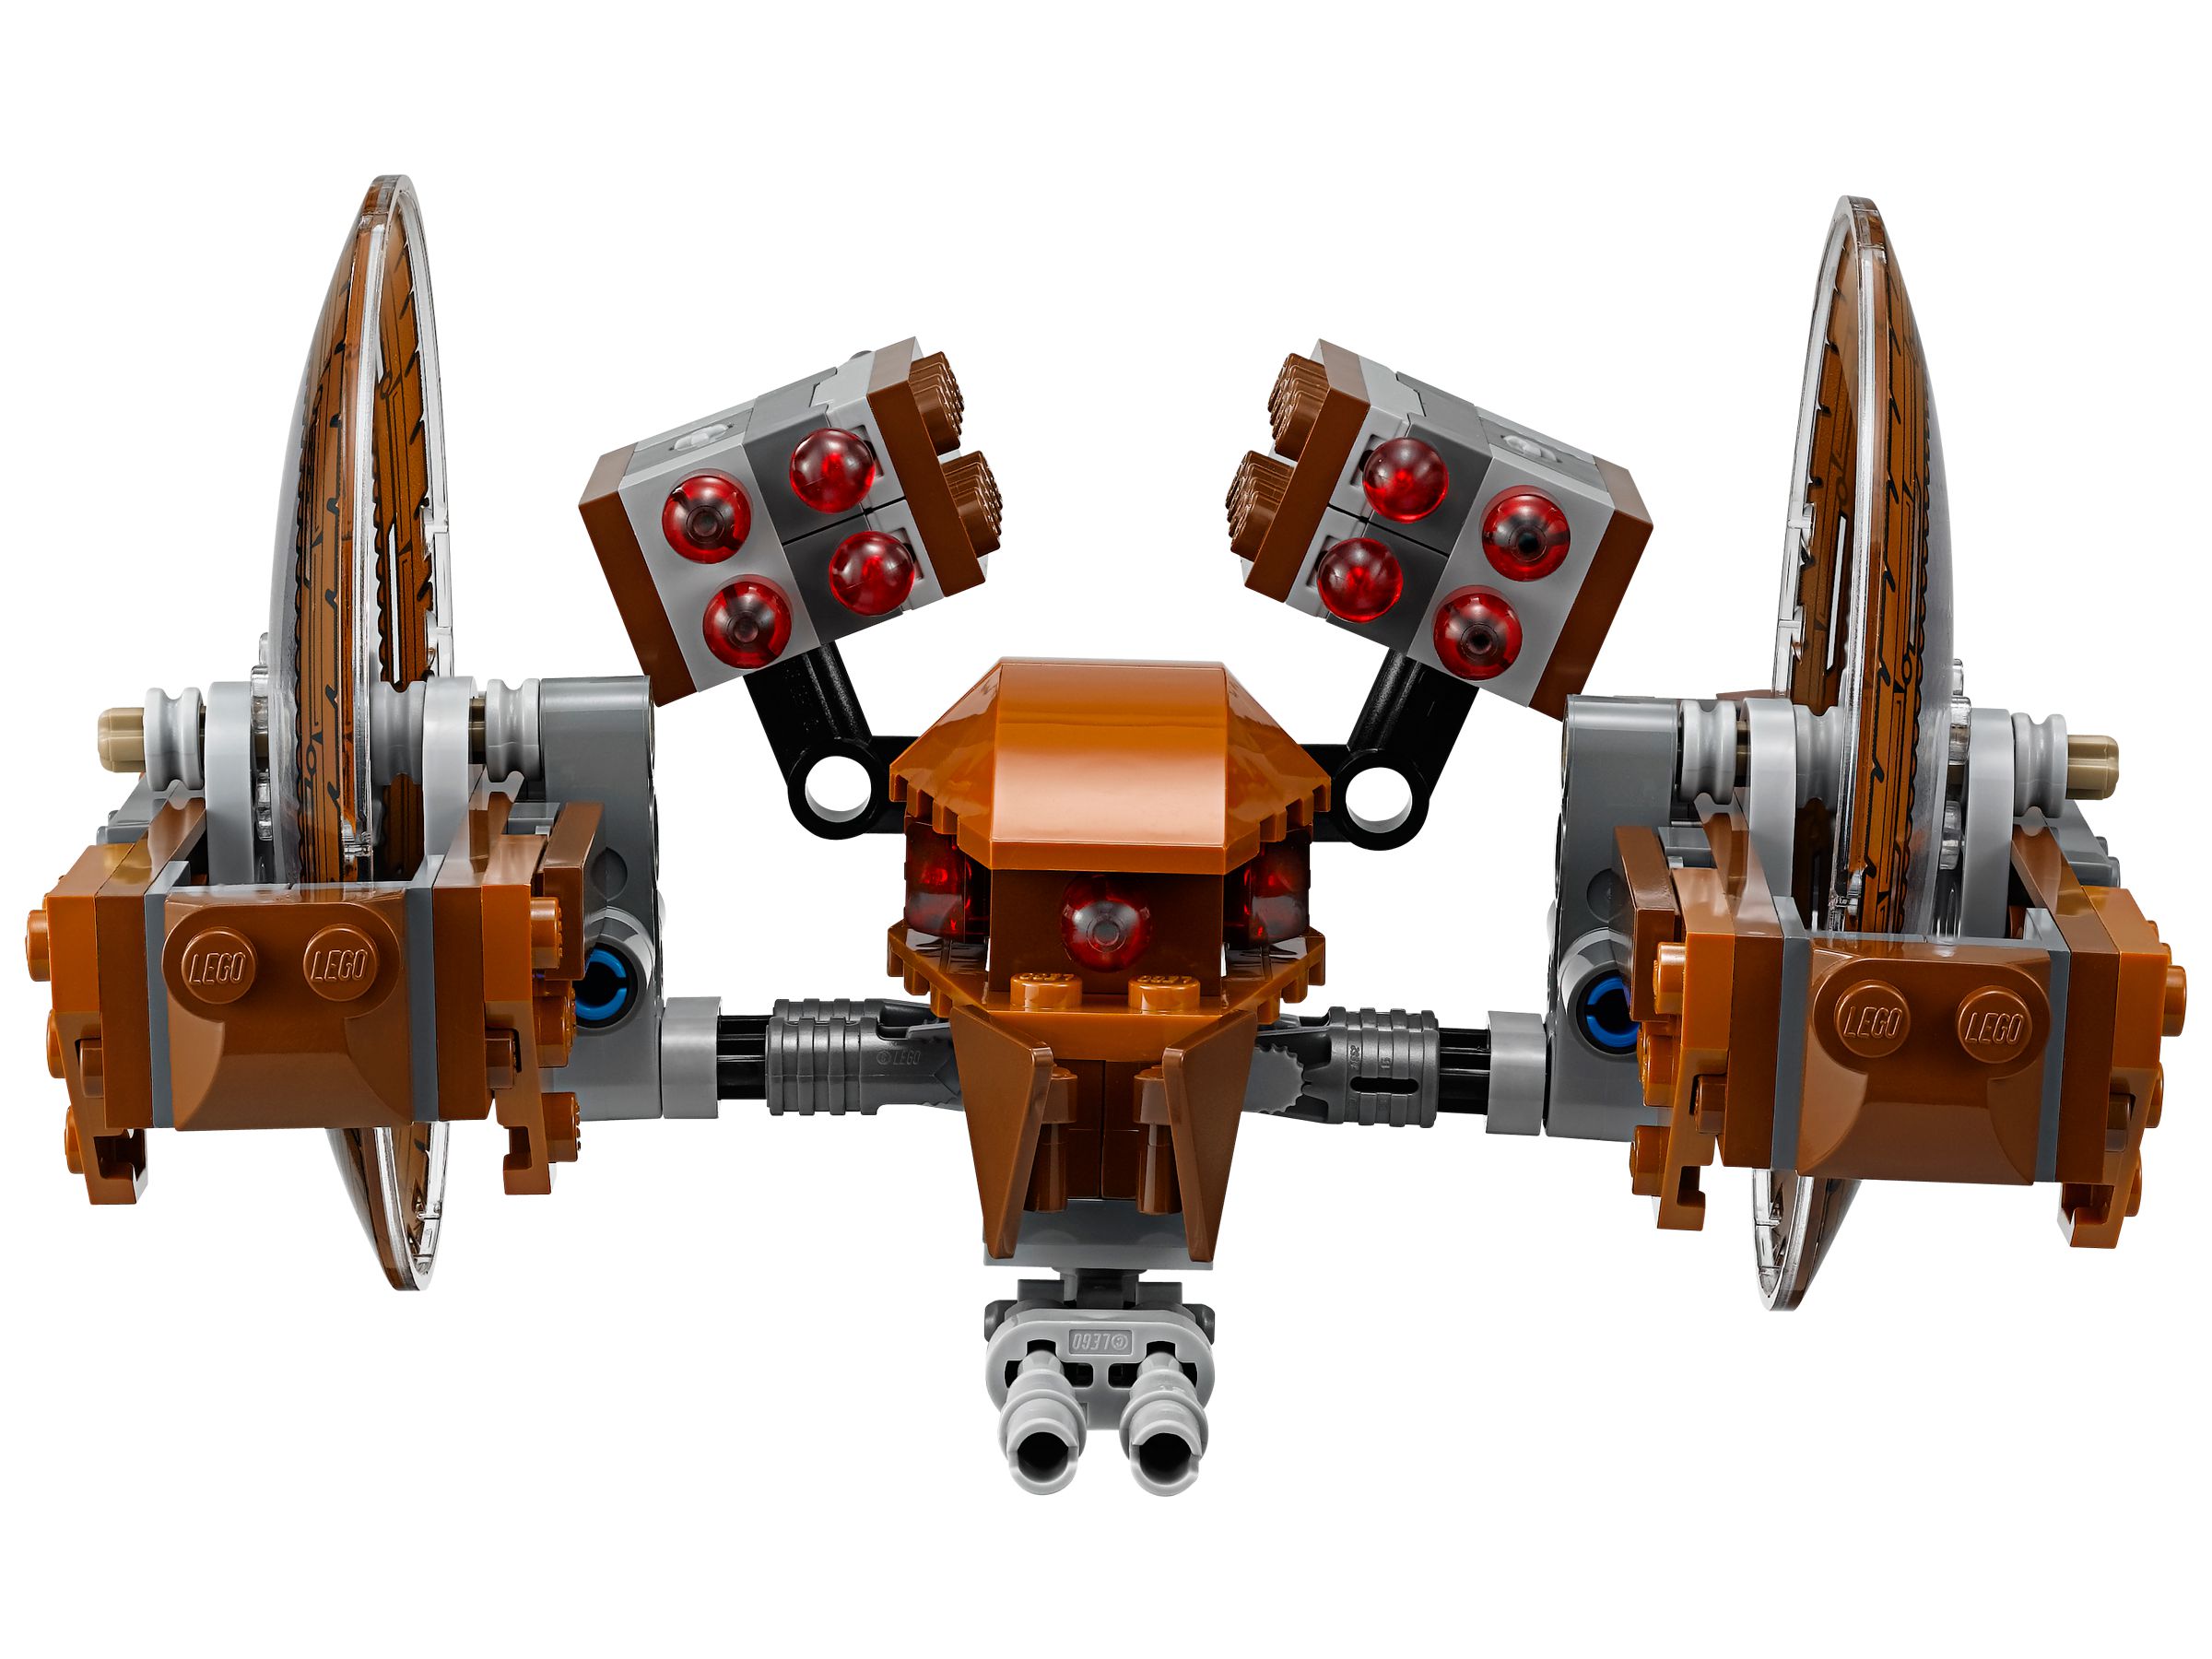 LEGO Star Wars 75085 Hailfire Droid™ LEGO_75085_alt2.jpg